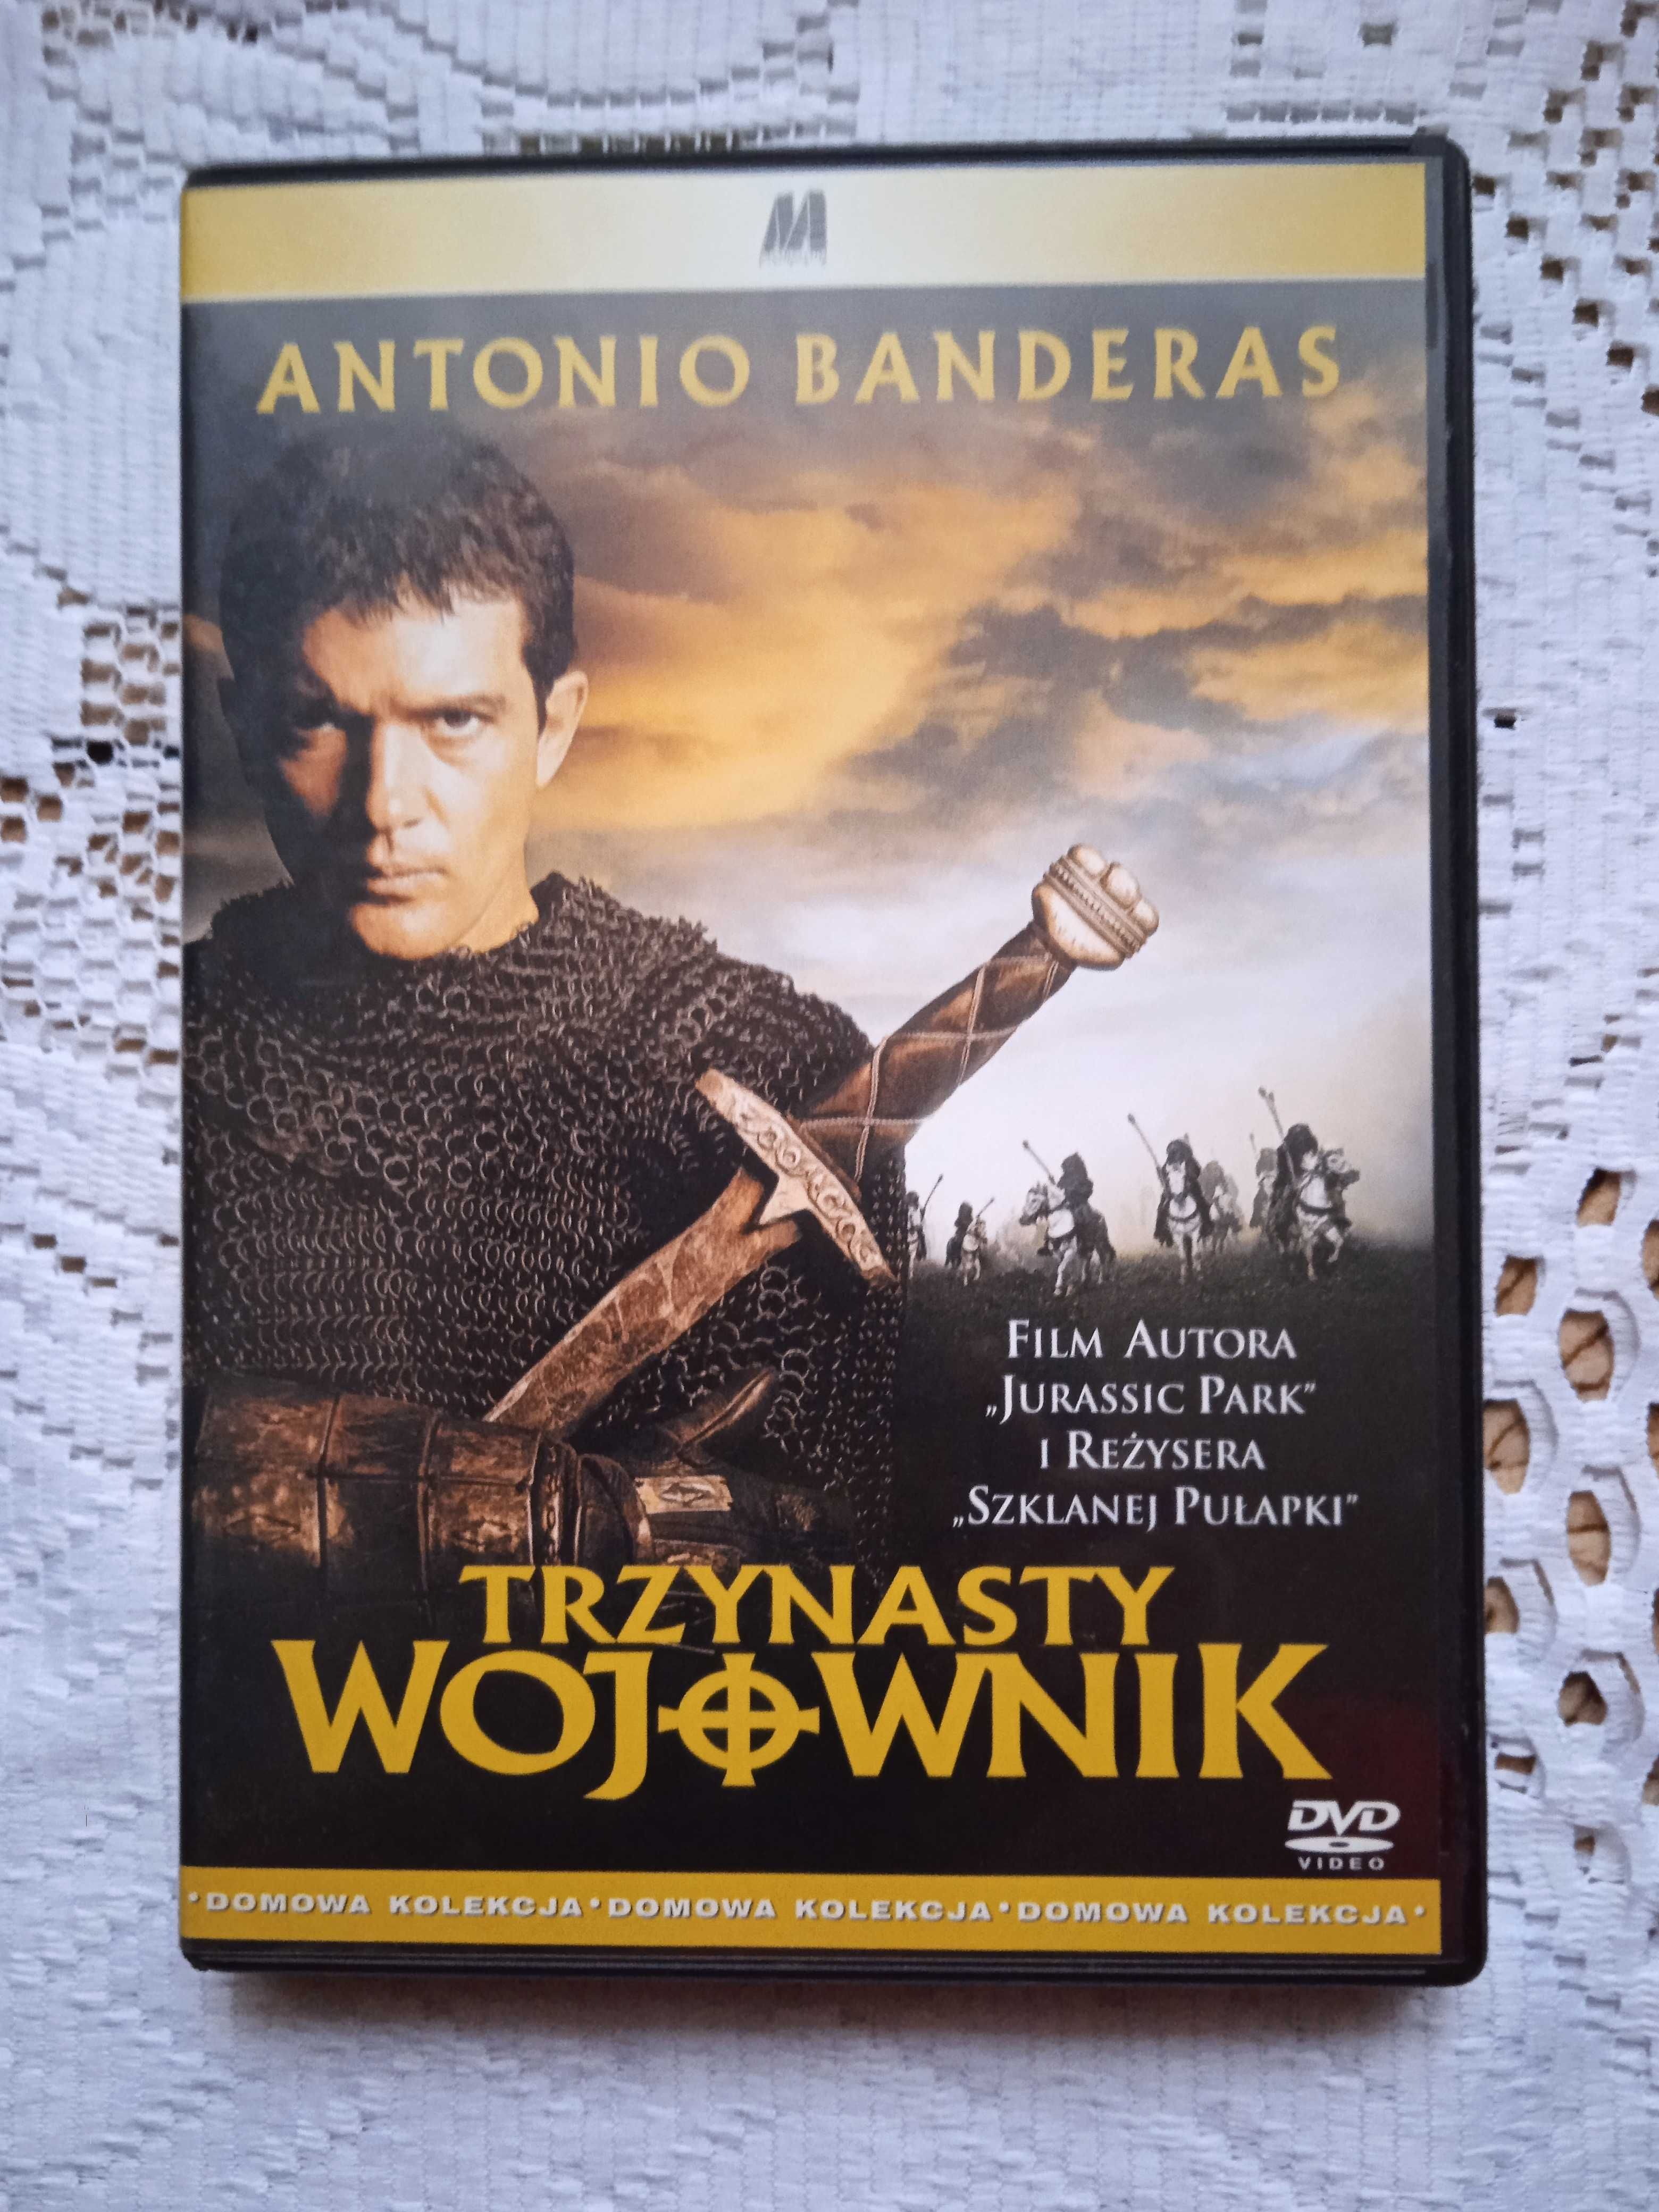 Film DVD: "Trzynasty Wojownik"